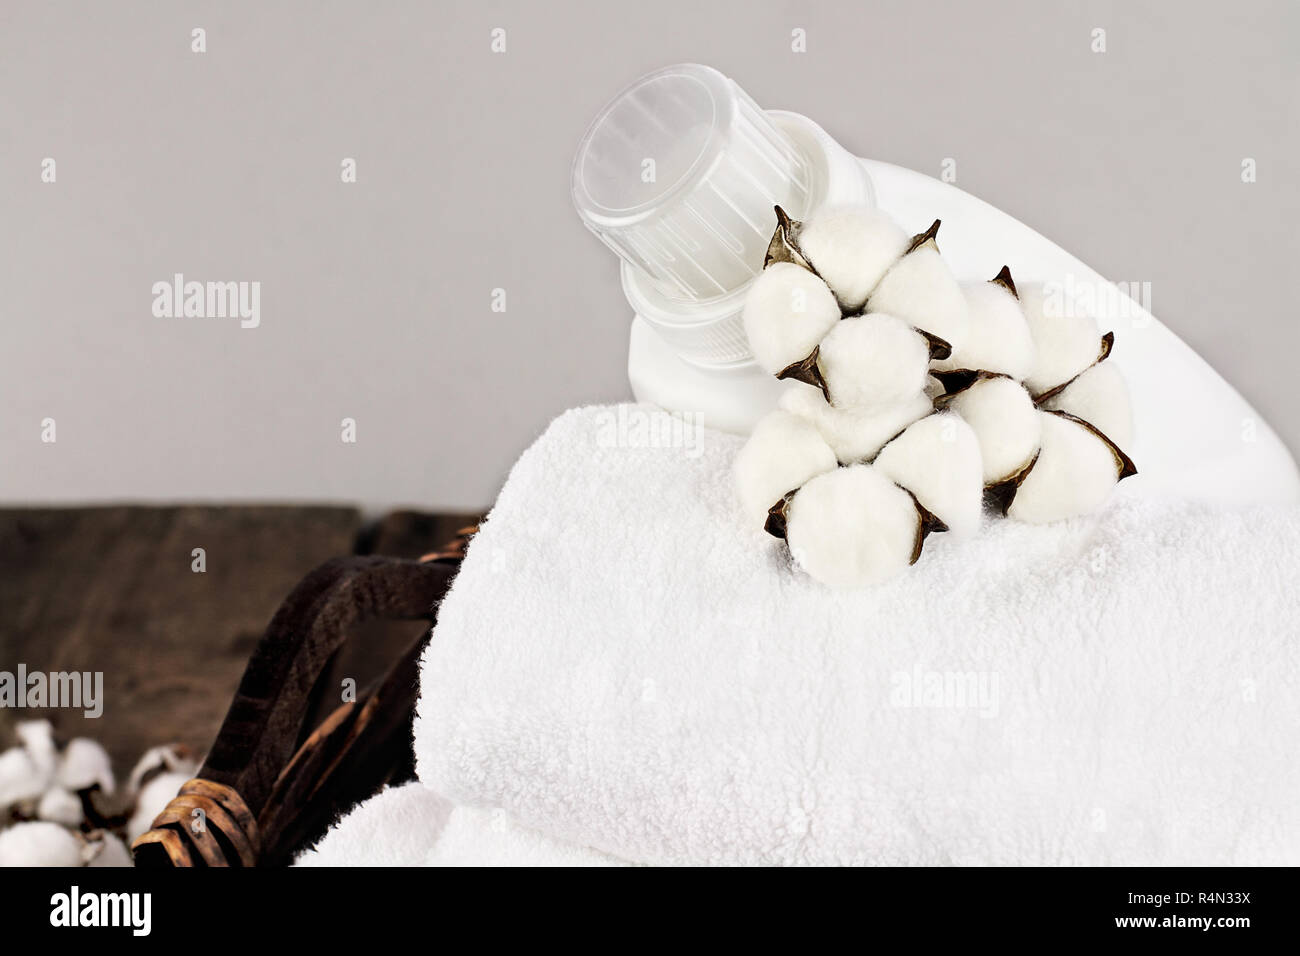 Wäsche Korb weiße flauschige Handtücher, Baumwolle, Blumen und eine Flasche flüssige Seife gegen einen unscharfen Hintergrund grau. Stockfoto